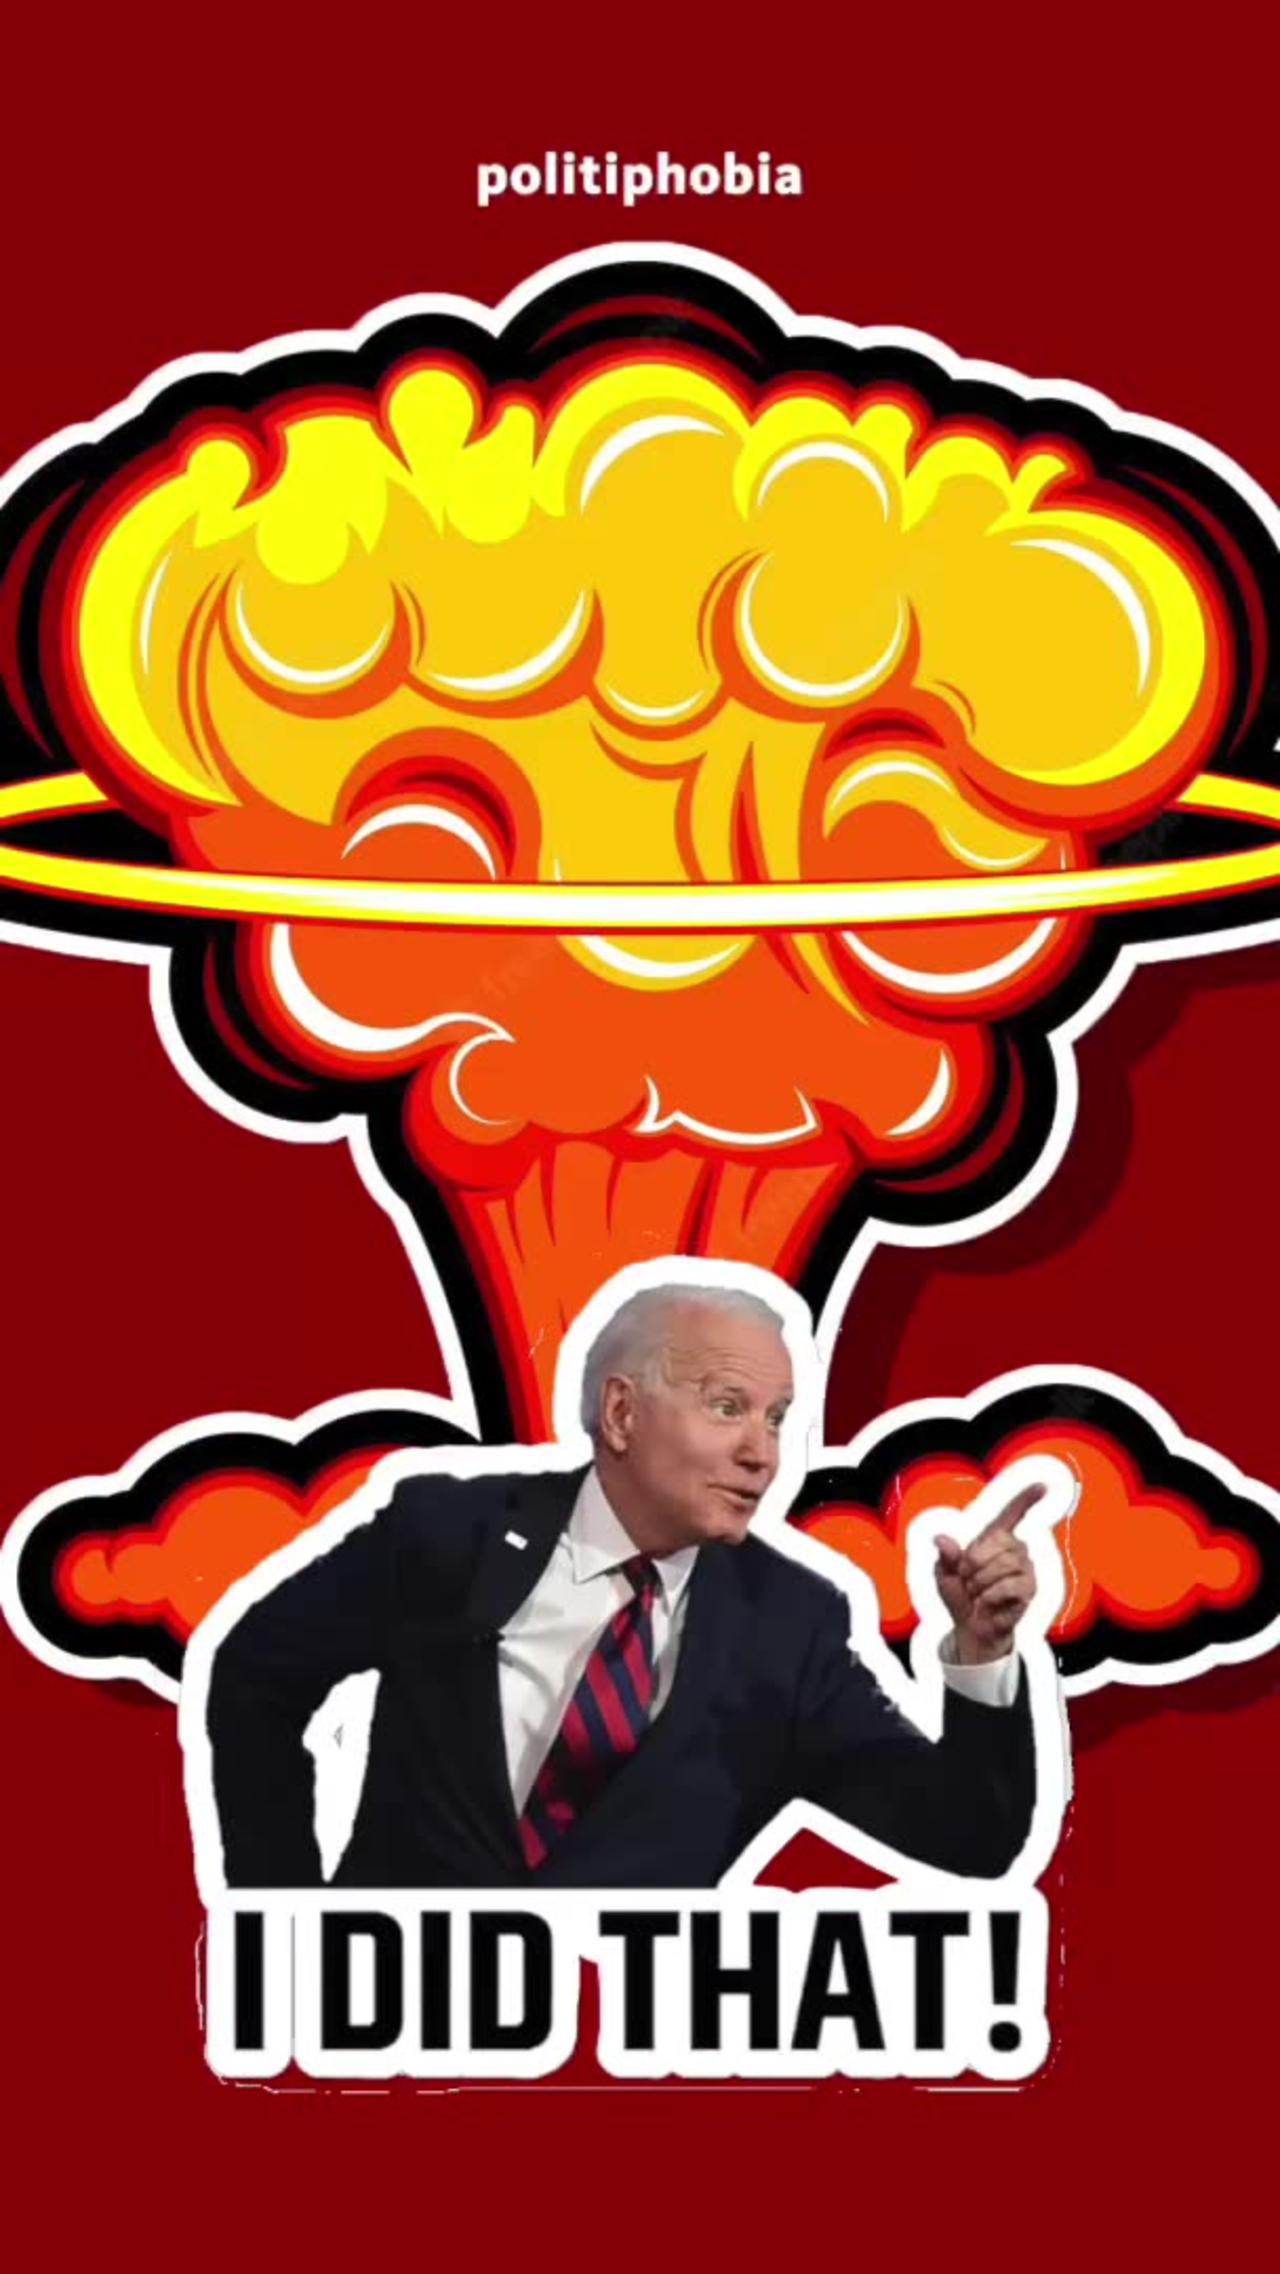 Joe Biden is a War Criminal